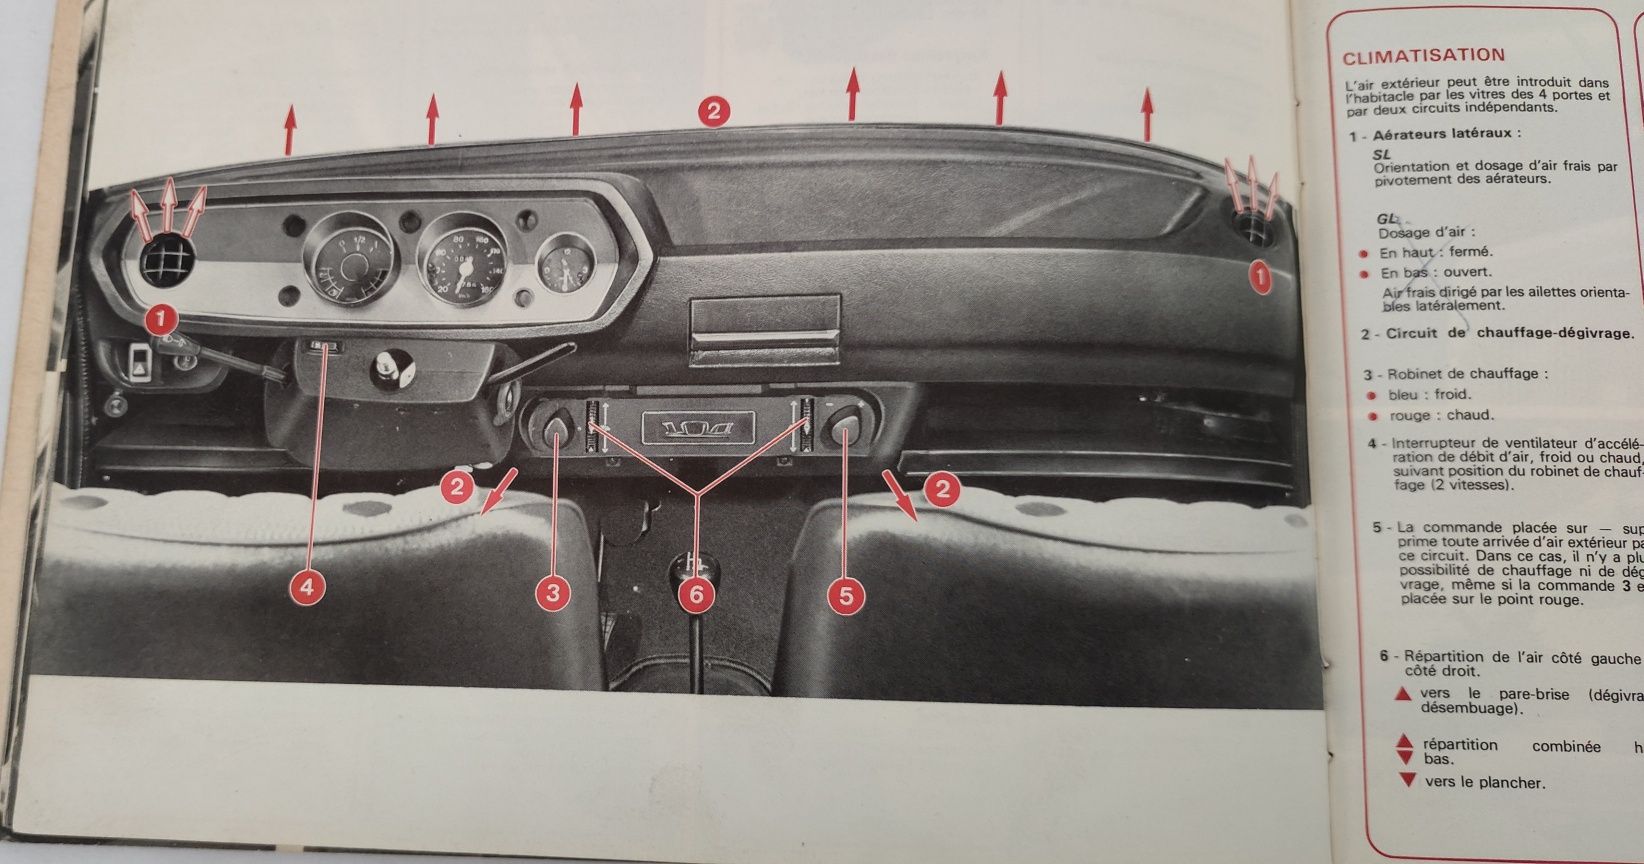 Manual do Condutor/Instruções do Peugeot 104 de 1977